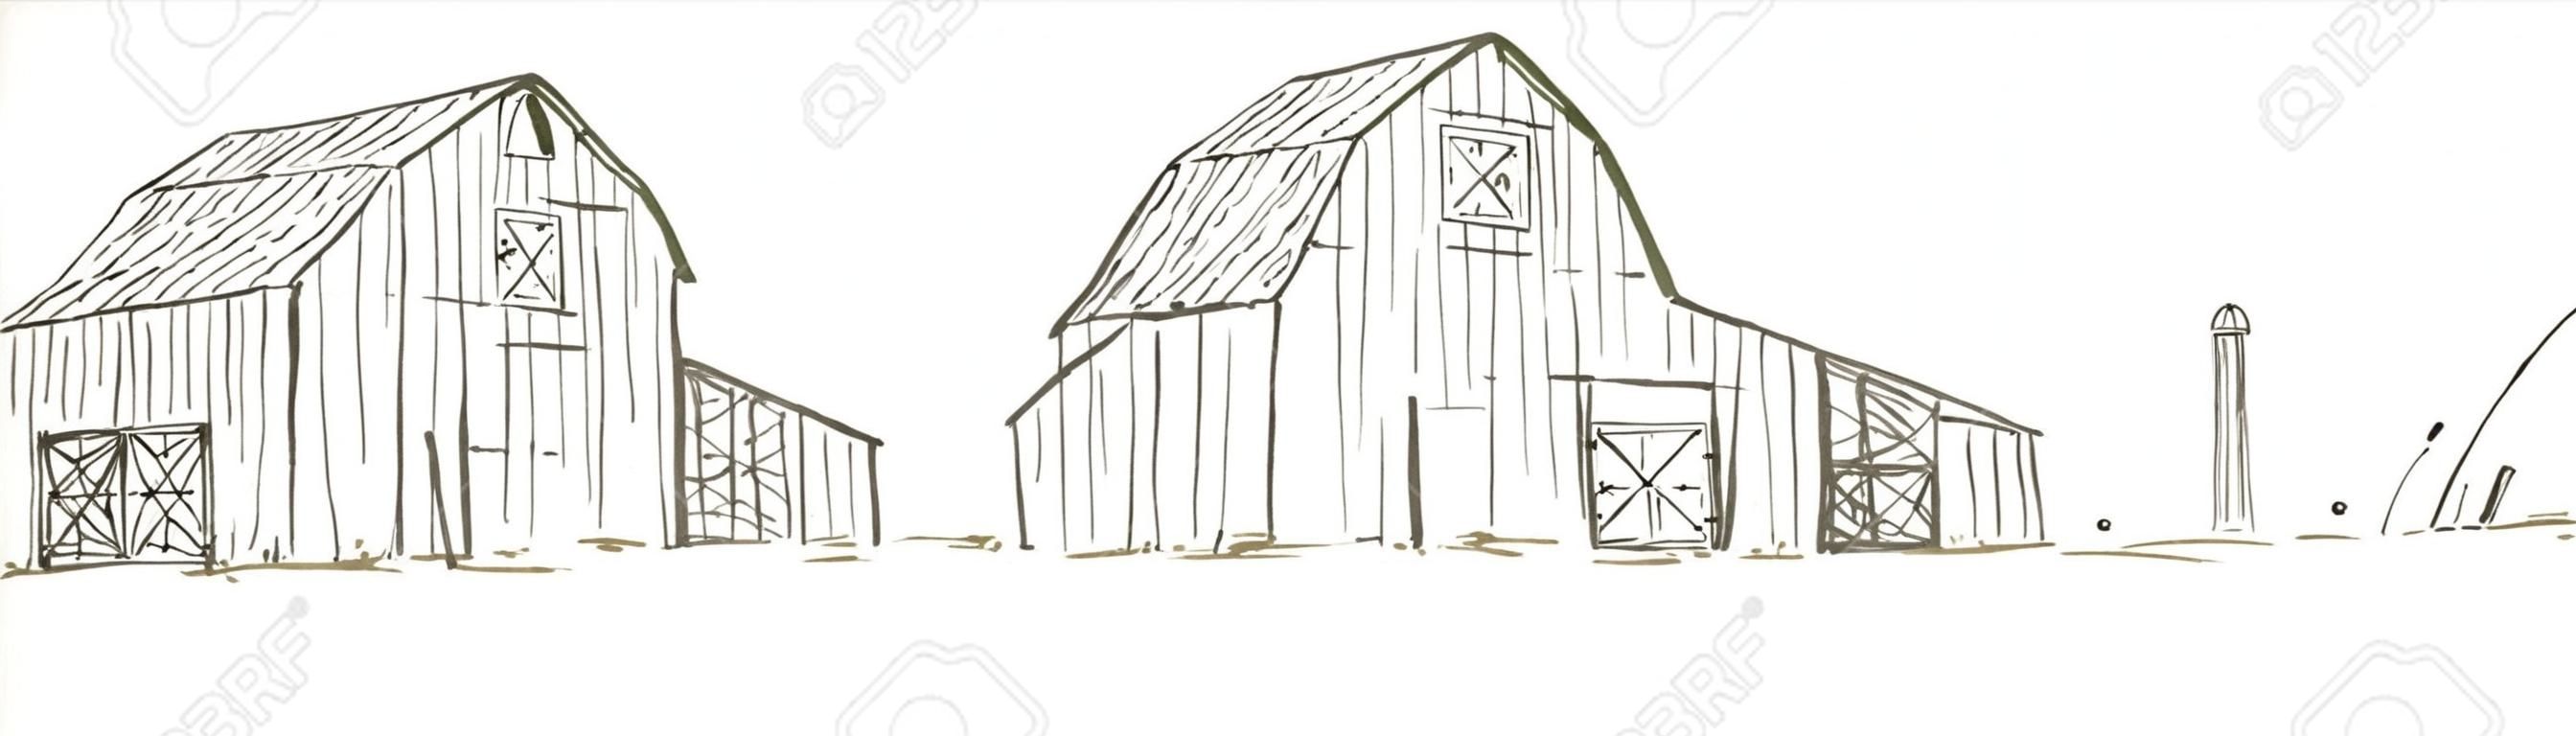 Pen en inkt stijl illustratie van een oude schuur / boerderij scene.